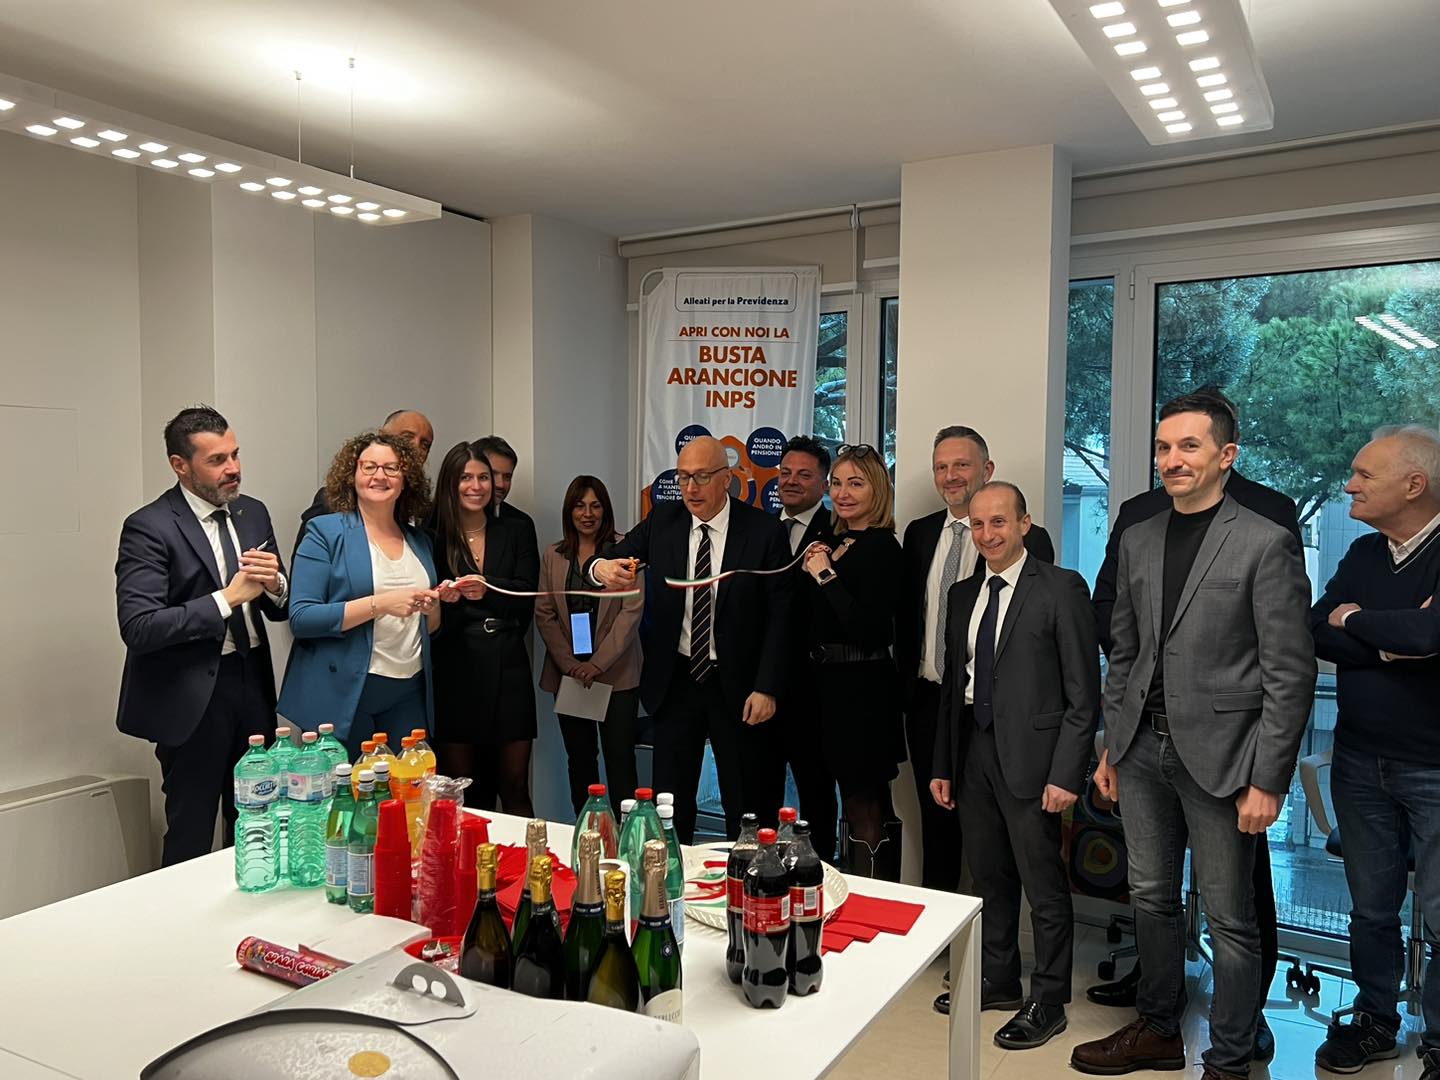 Alleanza assicurazioni ha inaugurato la nuova sede in viale Roma 